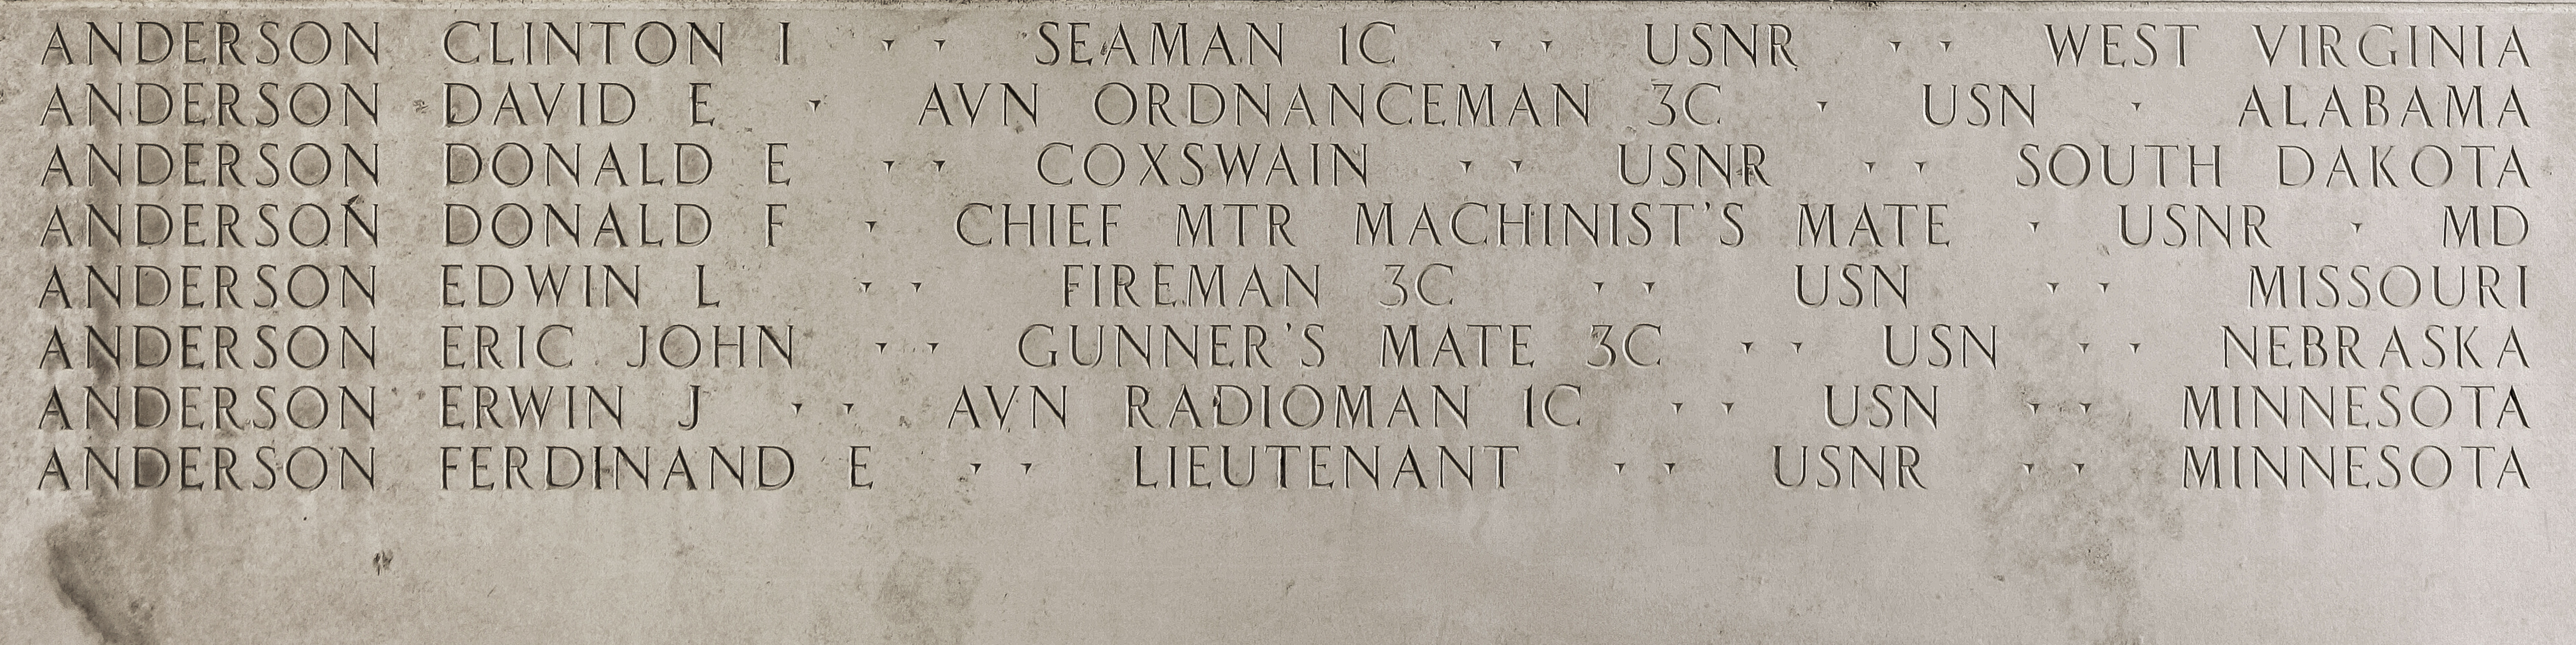 Edwin L. Anderson, Fireman Third Class